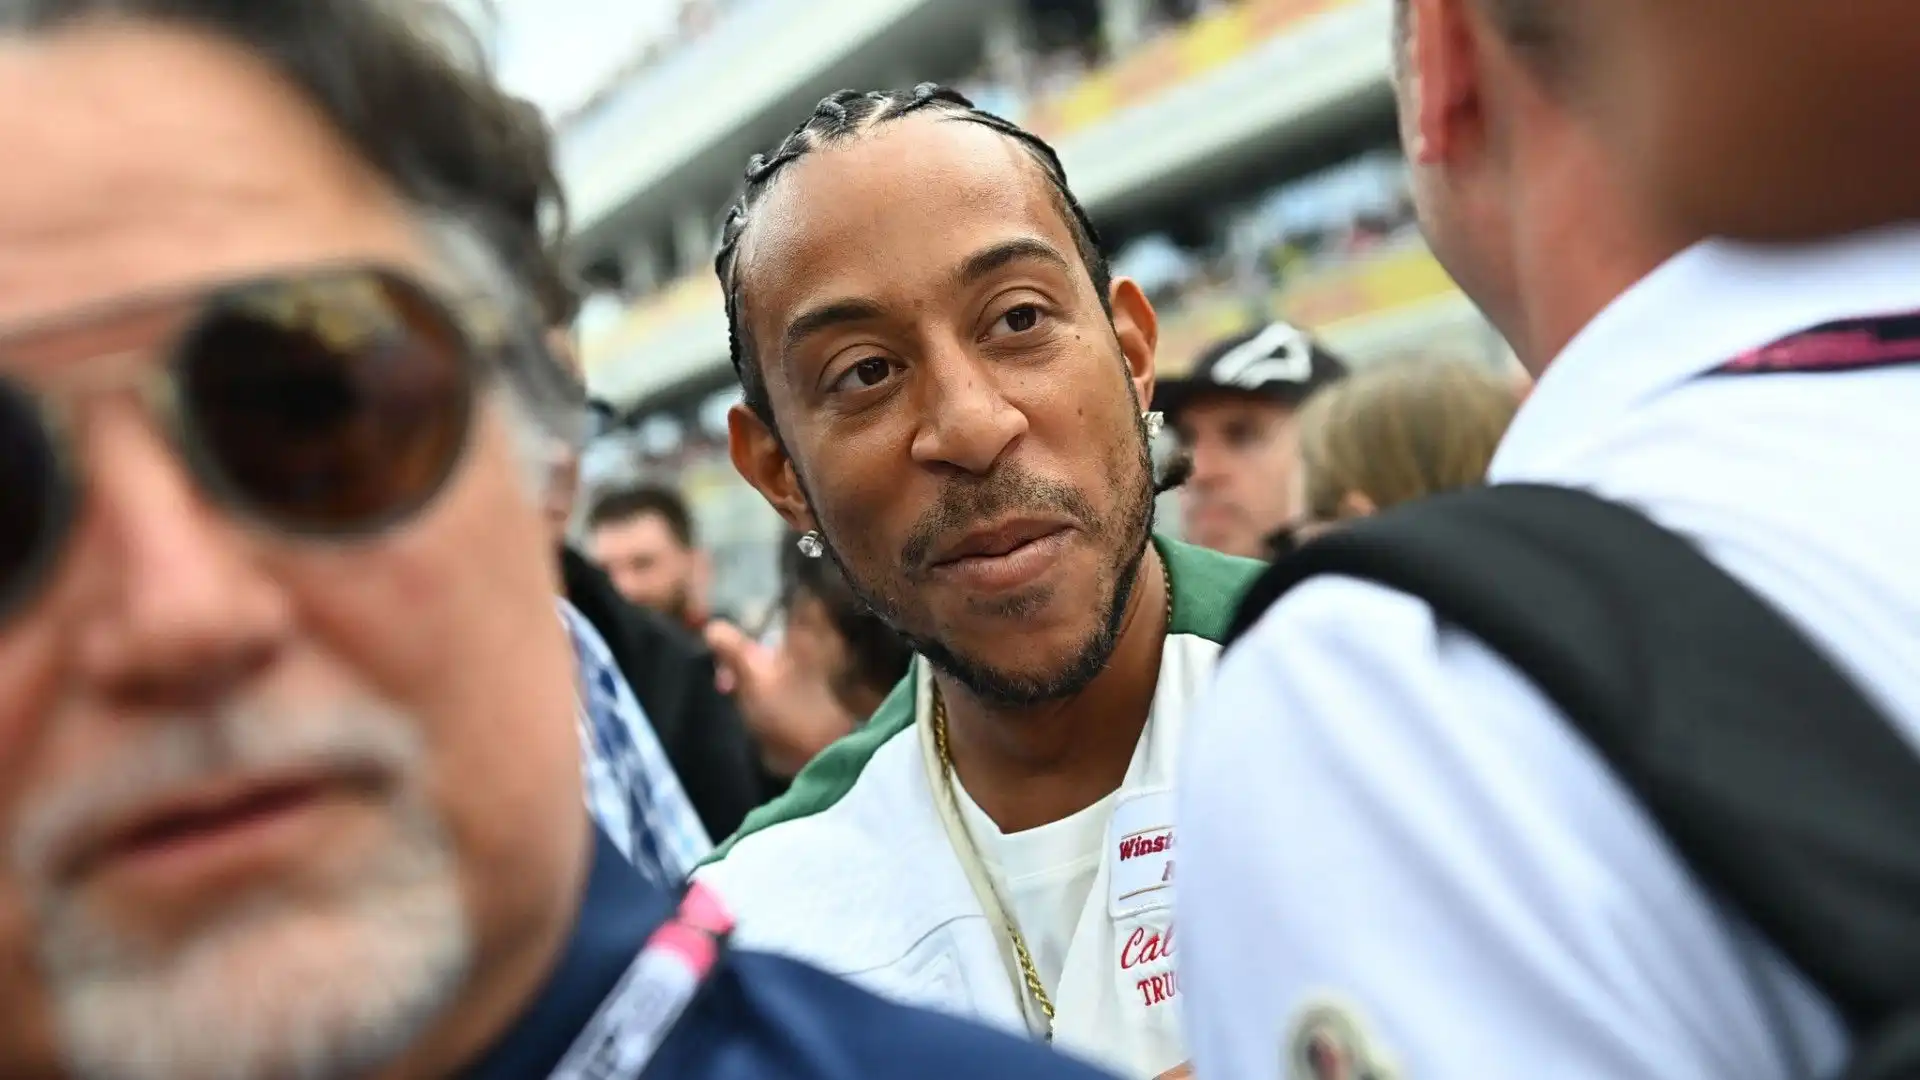 Ecco anche Ludacris, rapper e attore conosciuto per aver partecipato alla serie di film 'Fast and Furious'